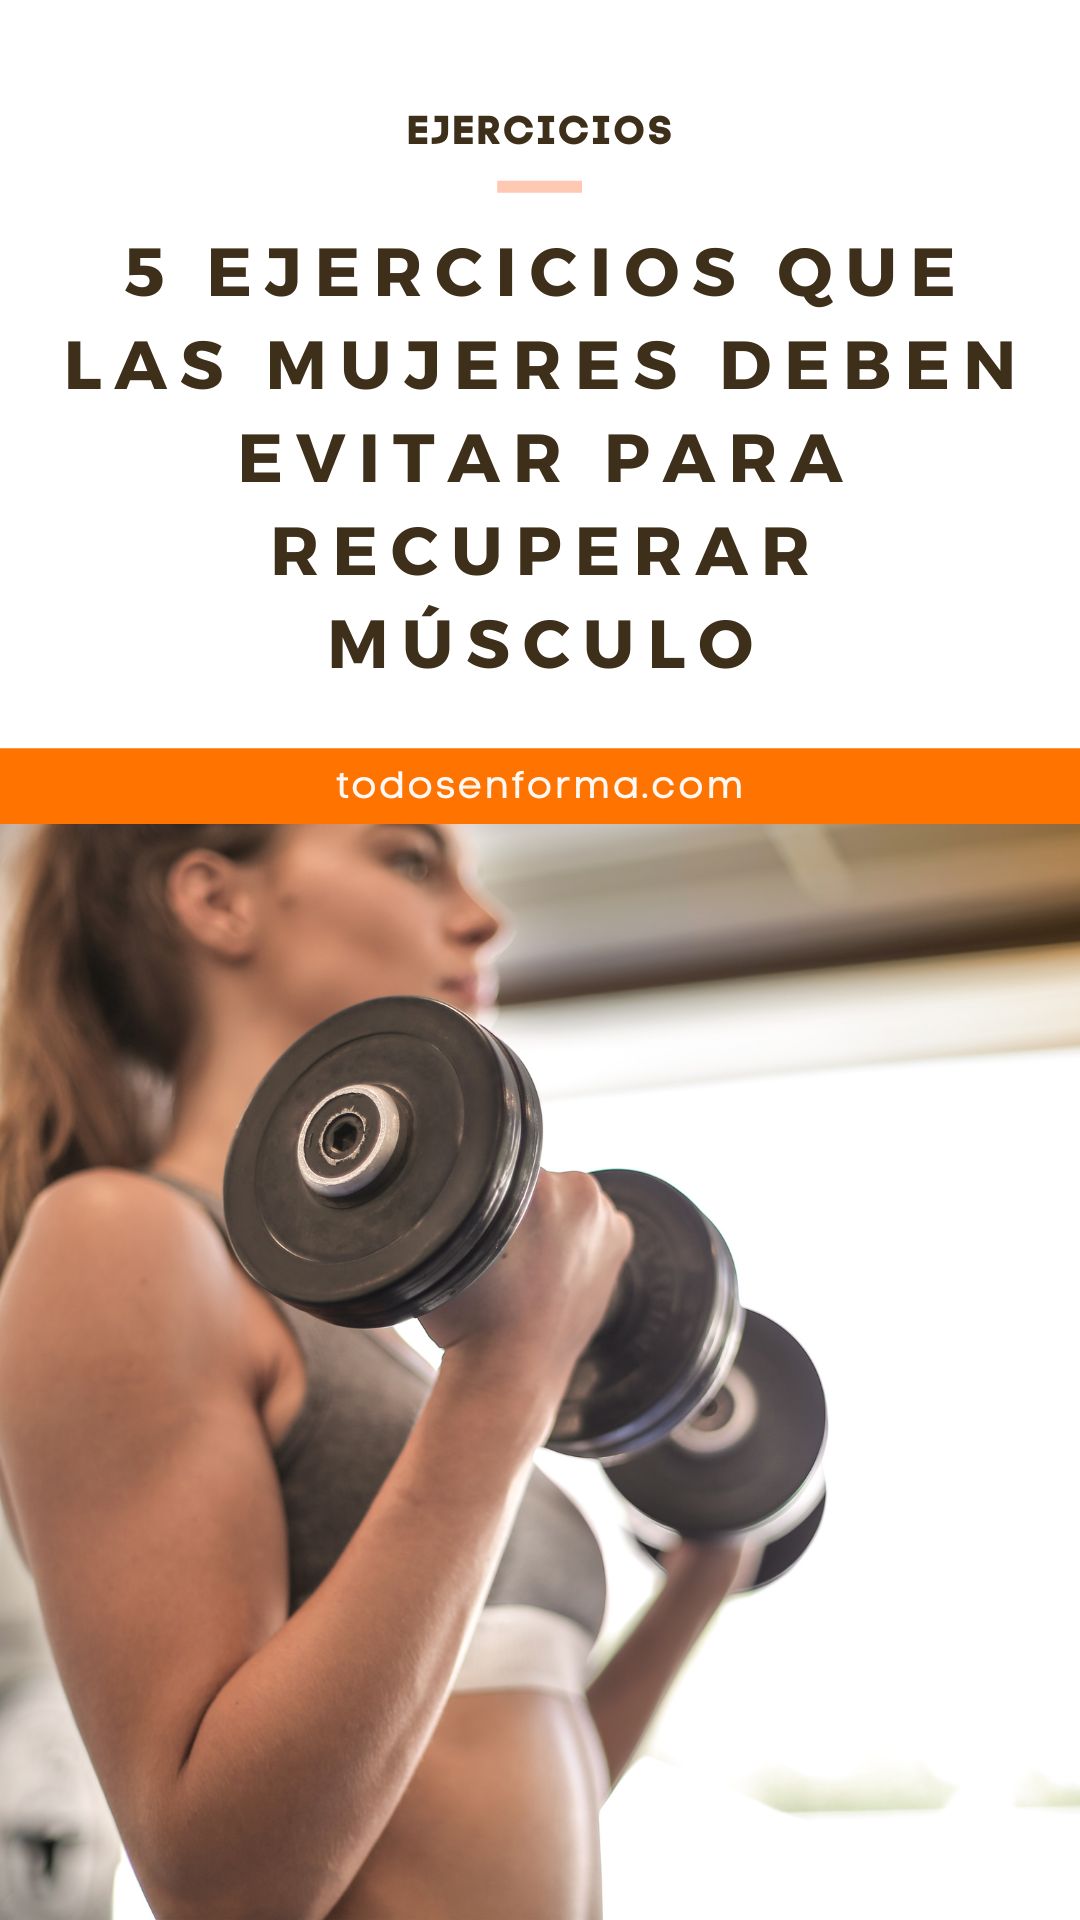 5 ejercicios que las mujeres deben evitar para recuperar músculo